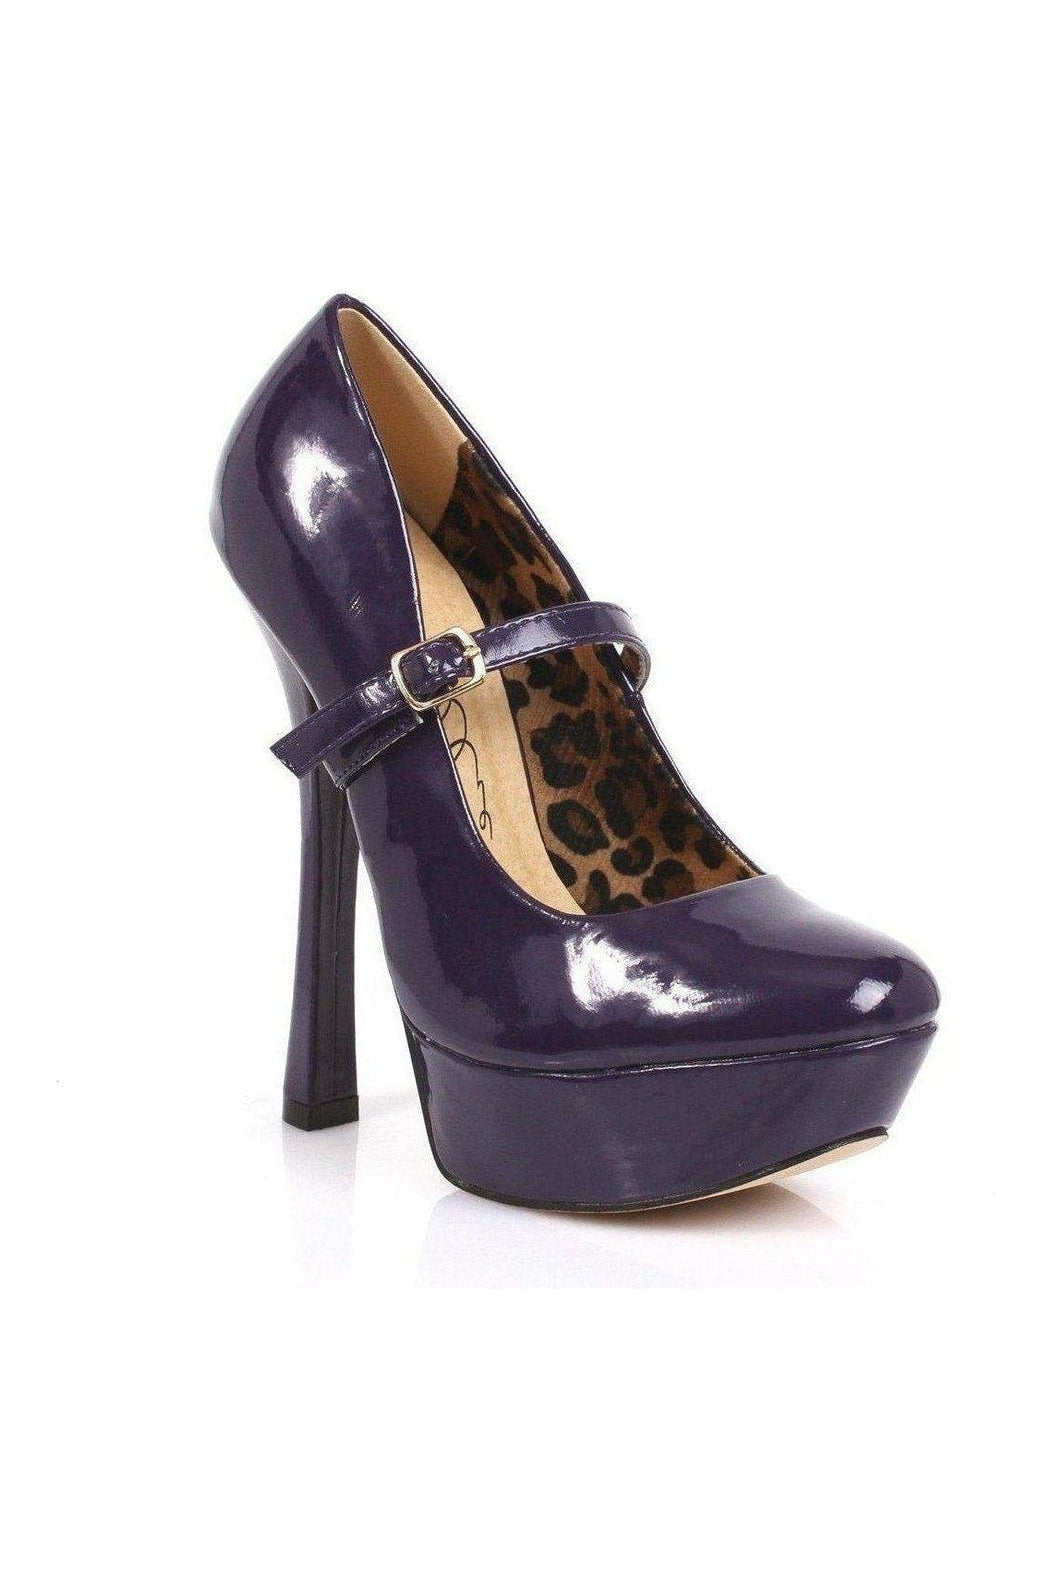 633-PAYTON Platform Pump | Purple Faux Leather-Pumps- Stripper Shoes at SEXYSHOES.COM